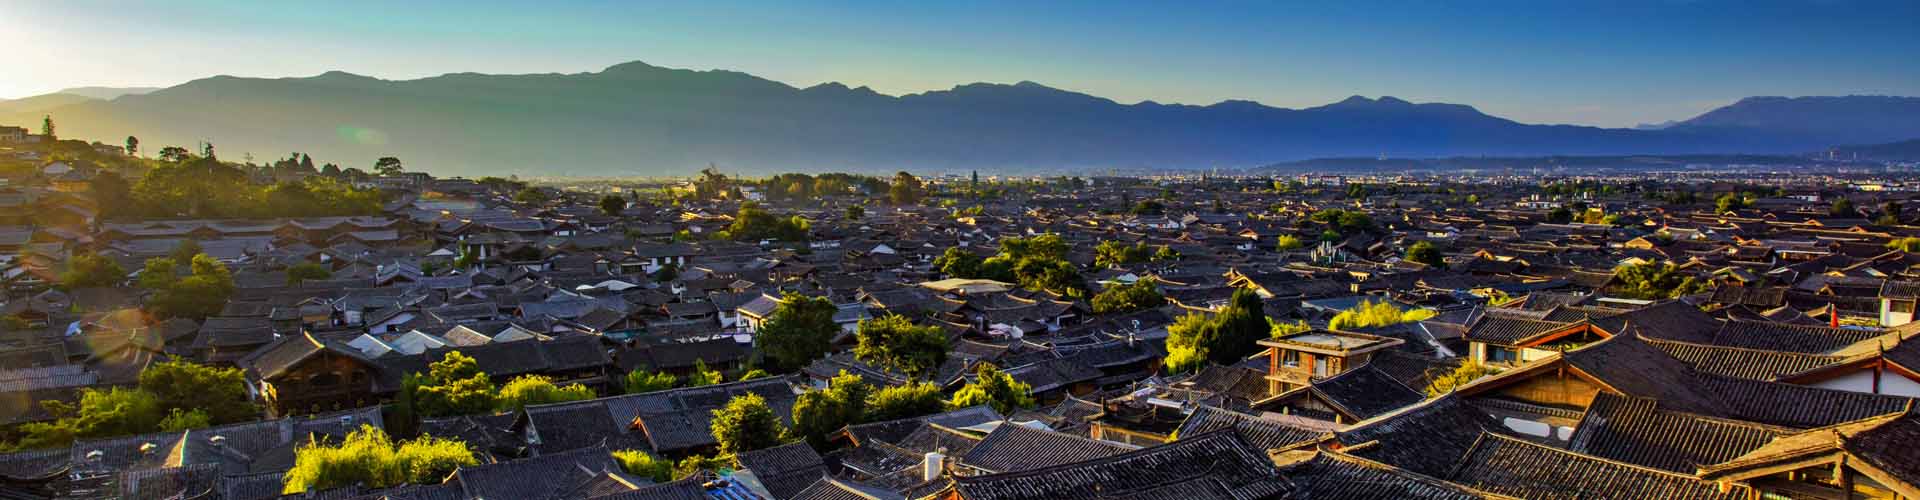 ciudad antigua Lijiang